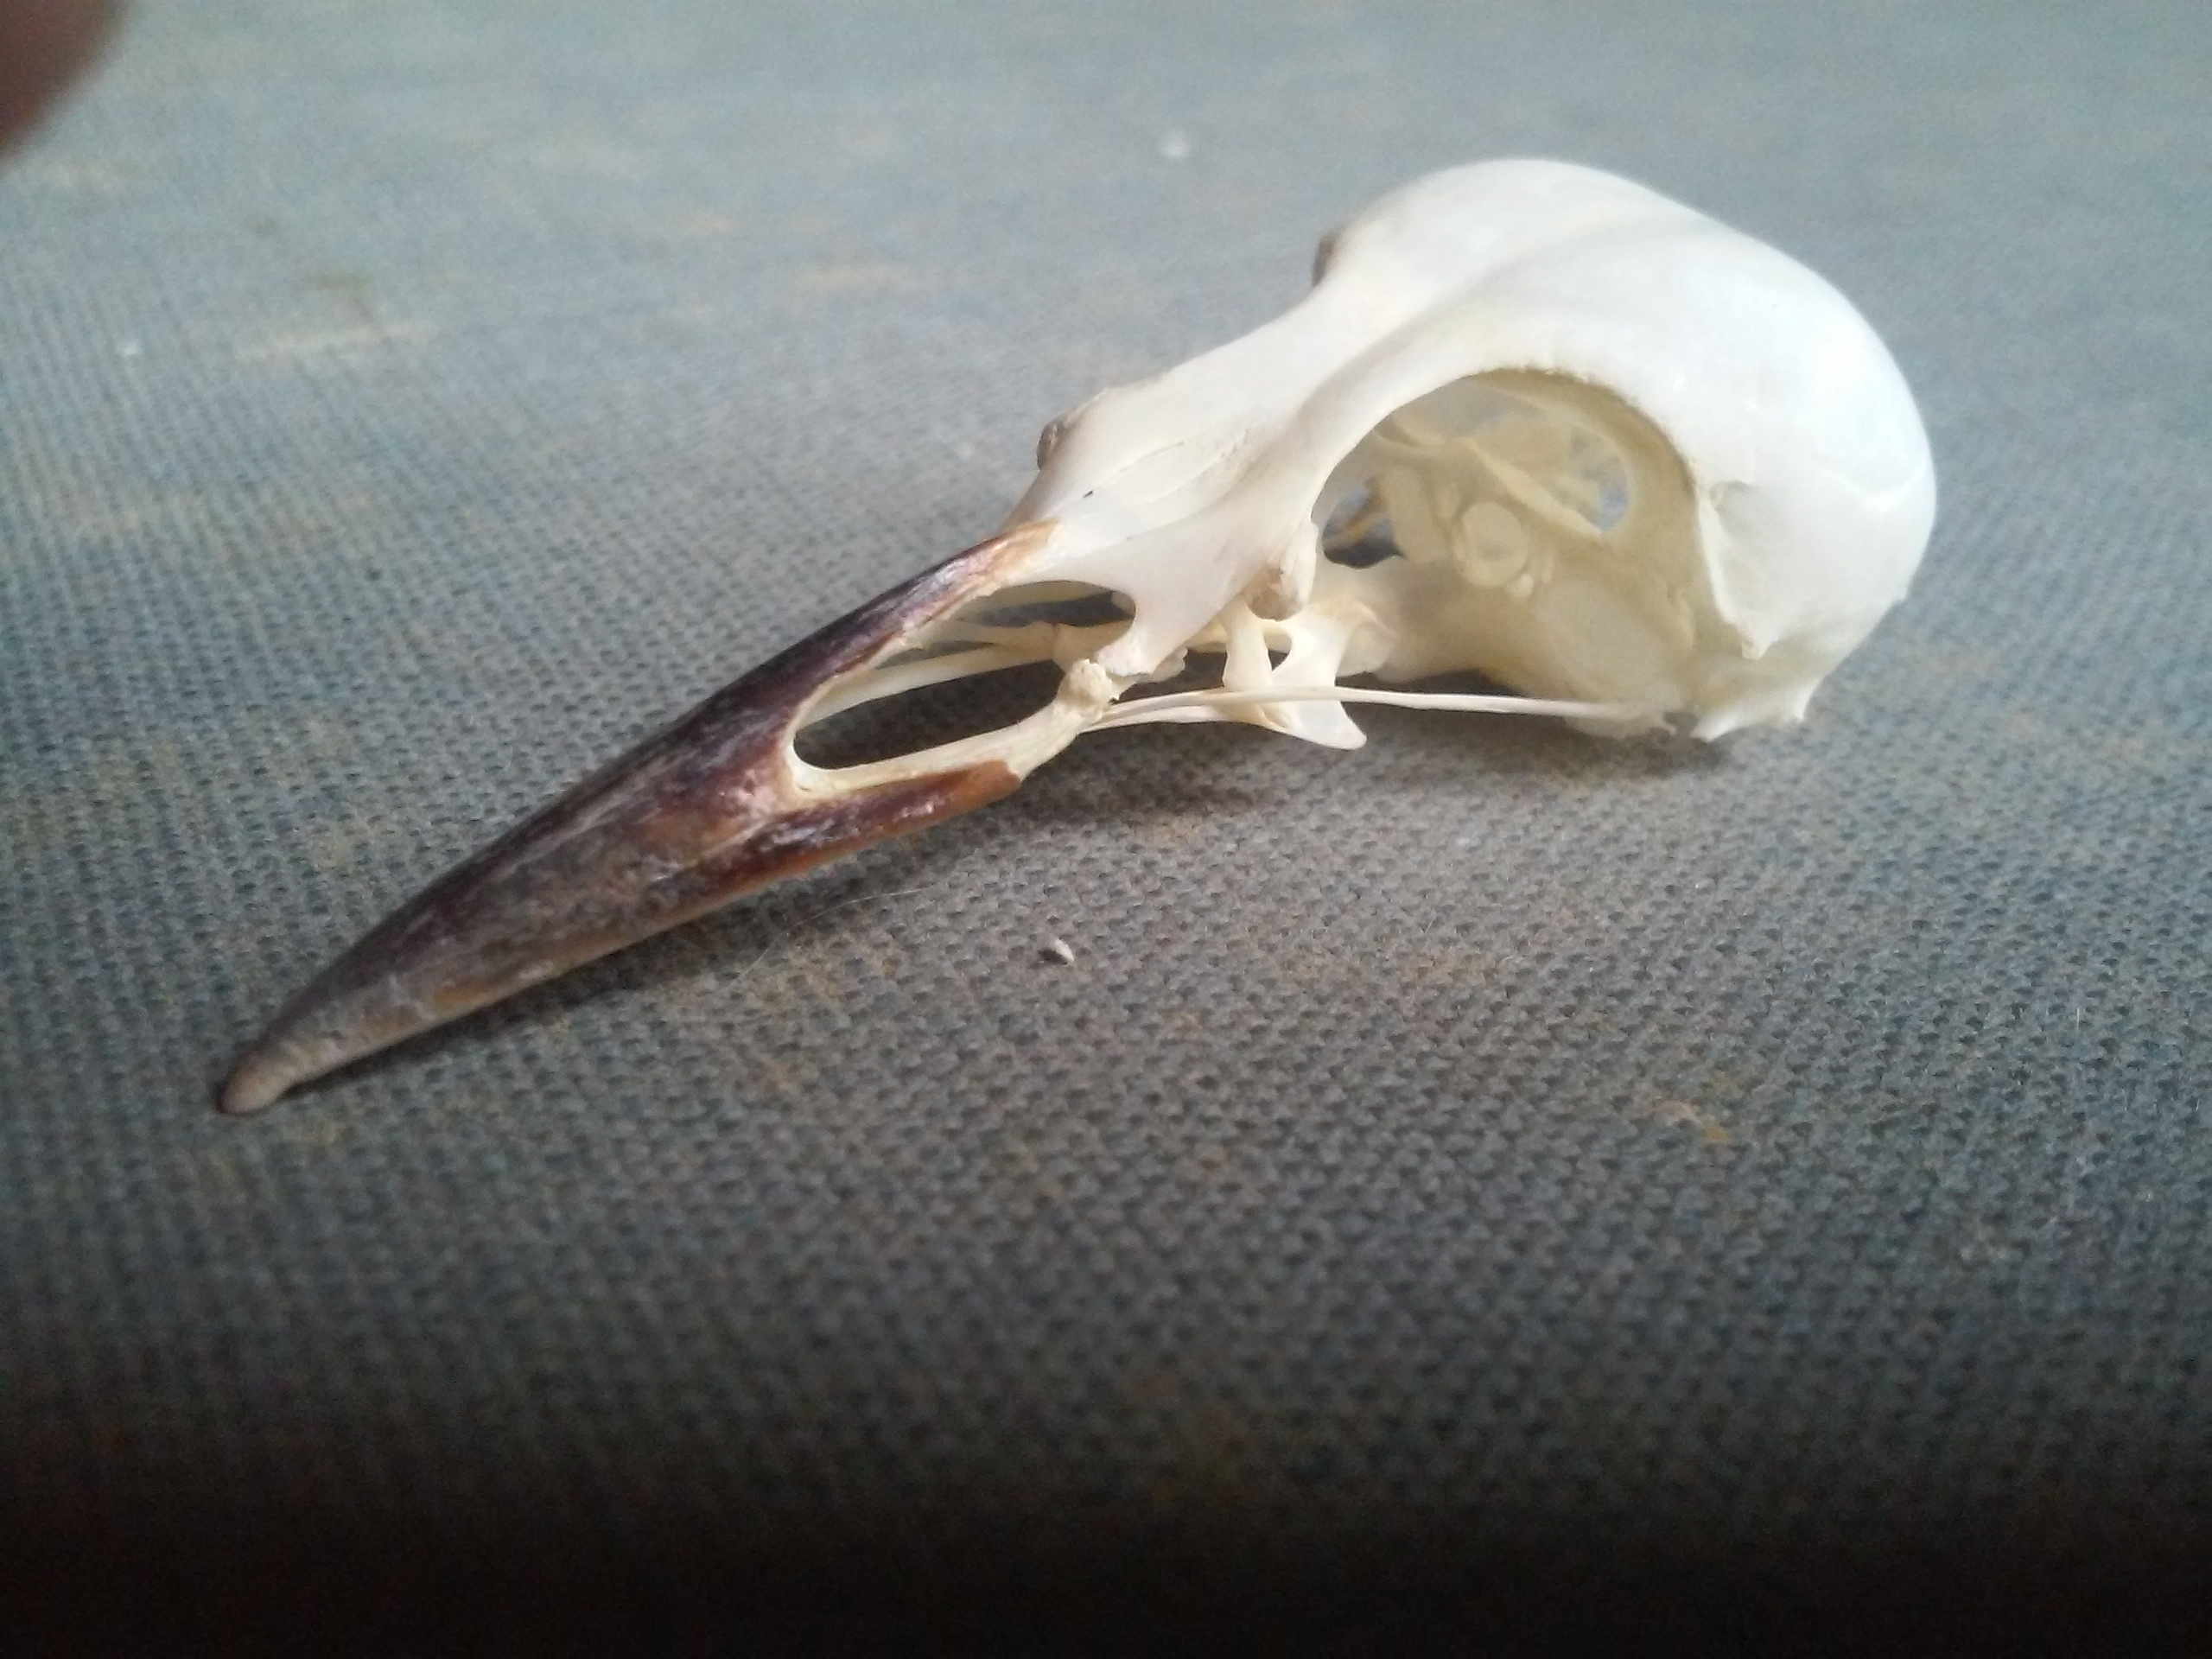 NaturePlus: Bird skull identification?